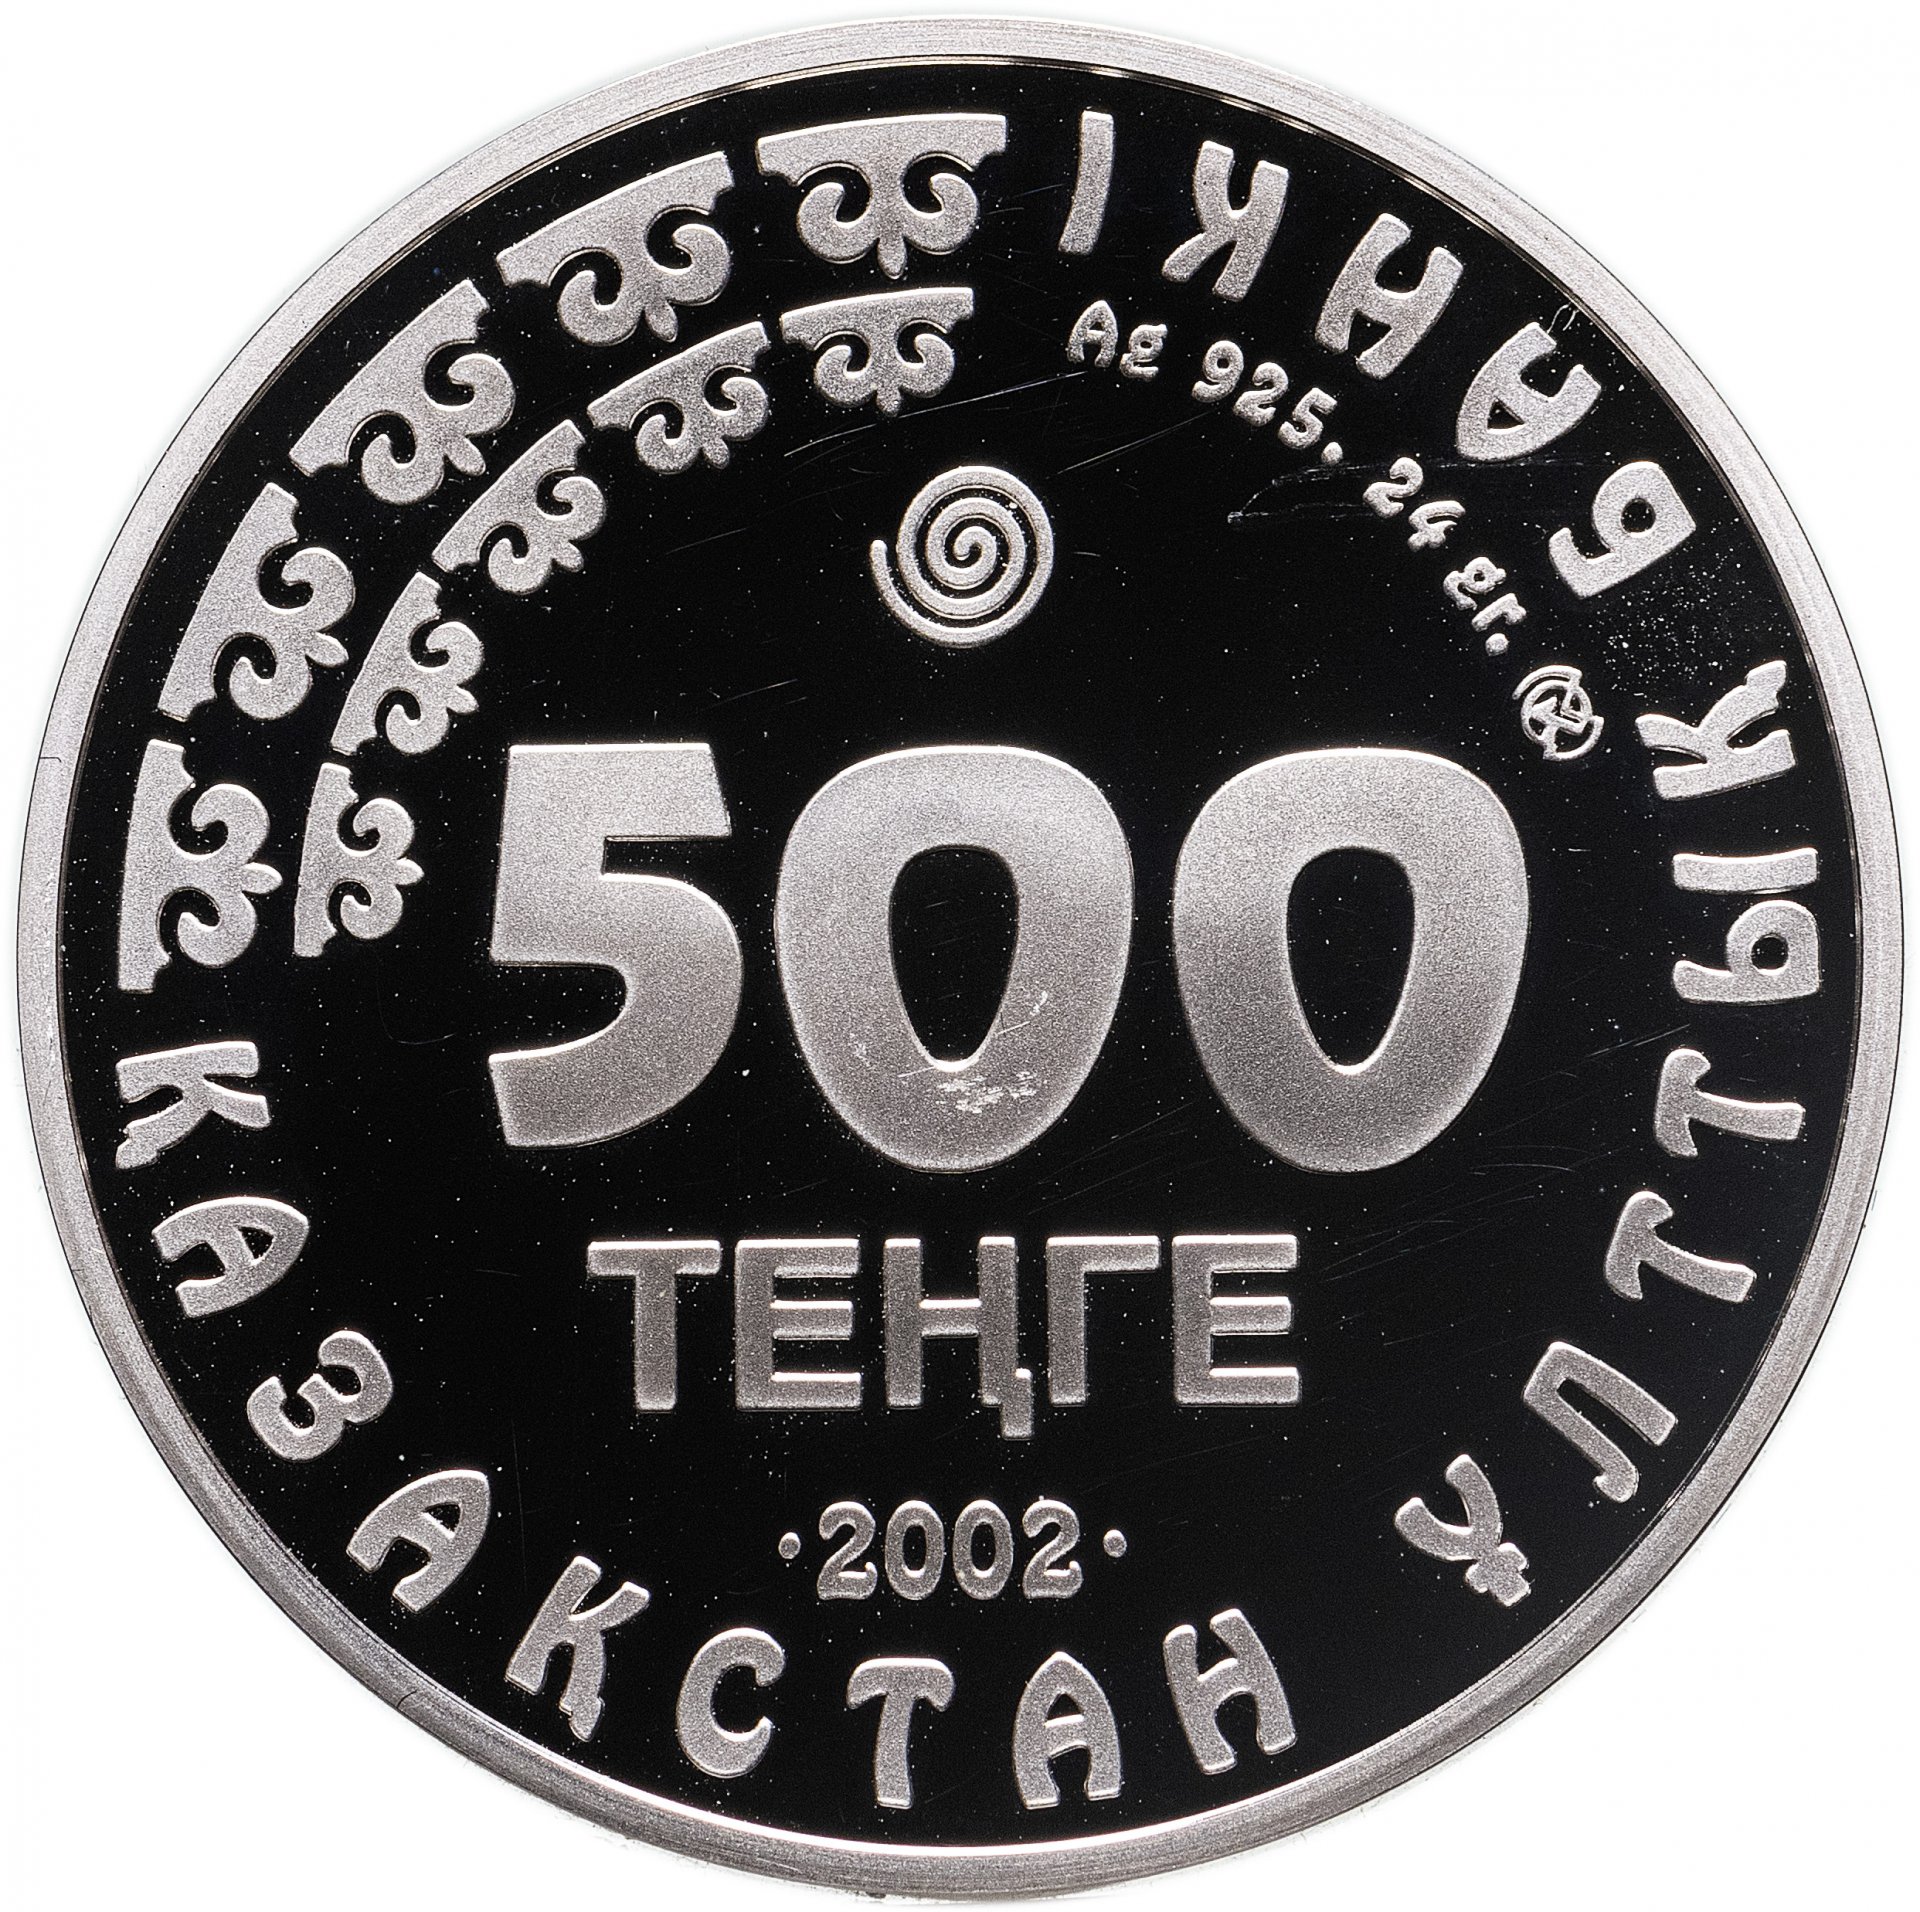 500 тг в рубли